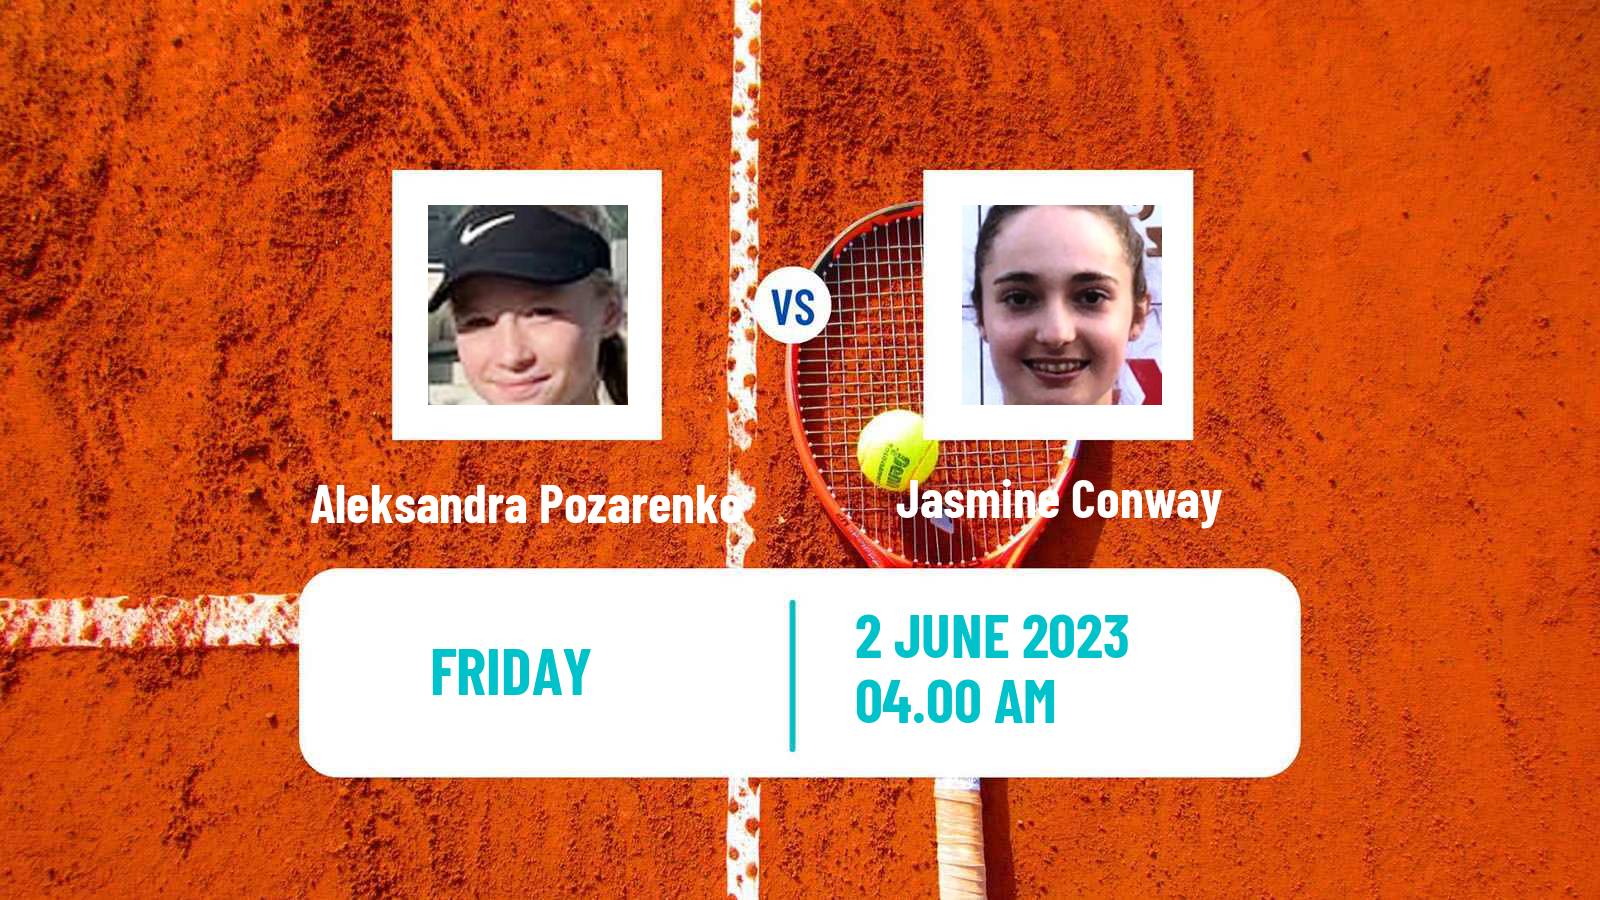 Tennis ITF W15 Monastir 17 Women Aleksandra Pozarenko - Jasmine Conway